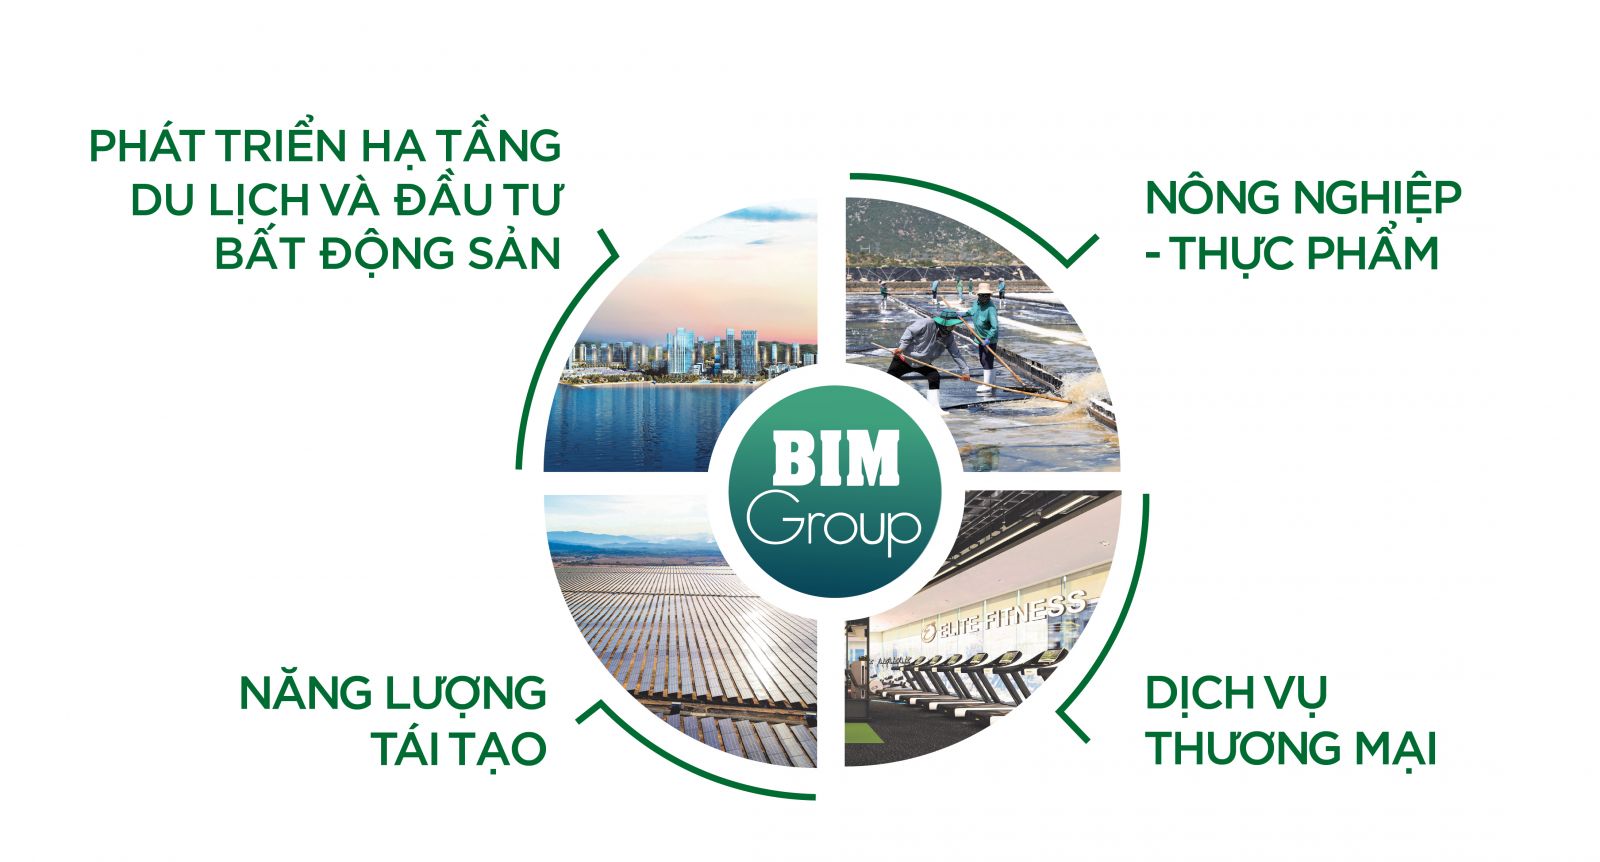 Giá trị cốt lõi của Tập đoàn Bim Group